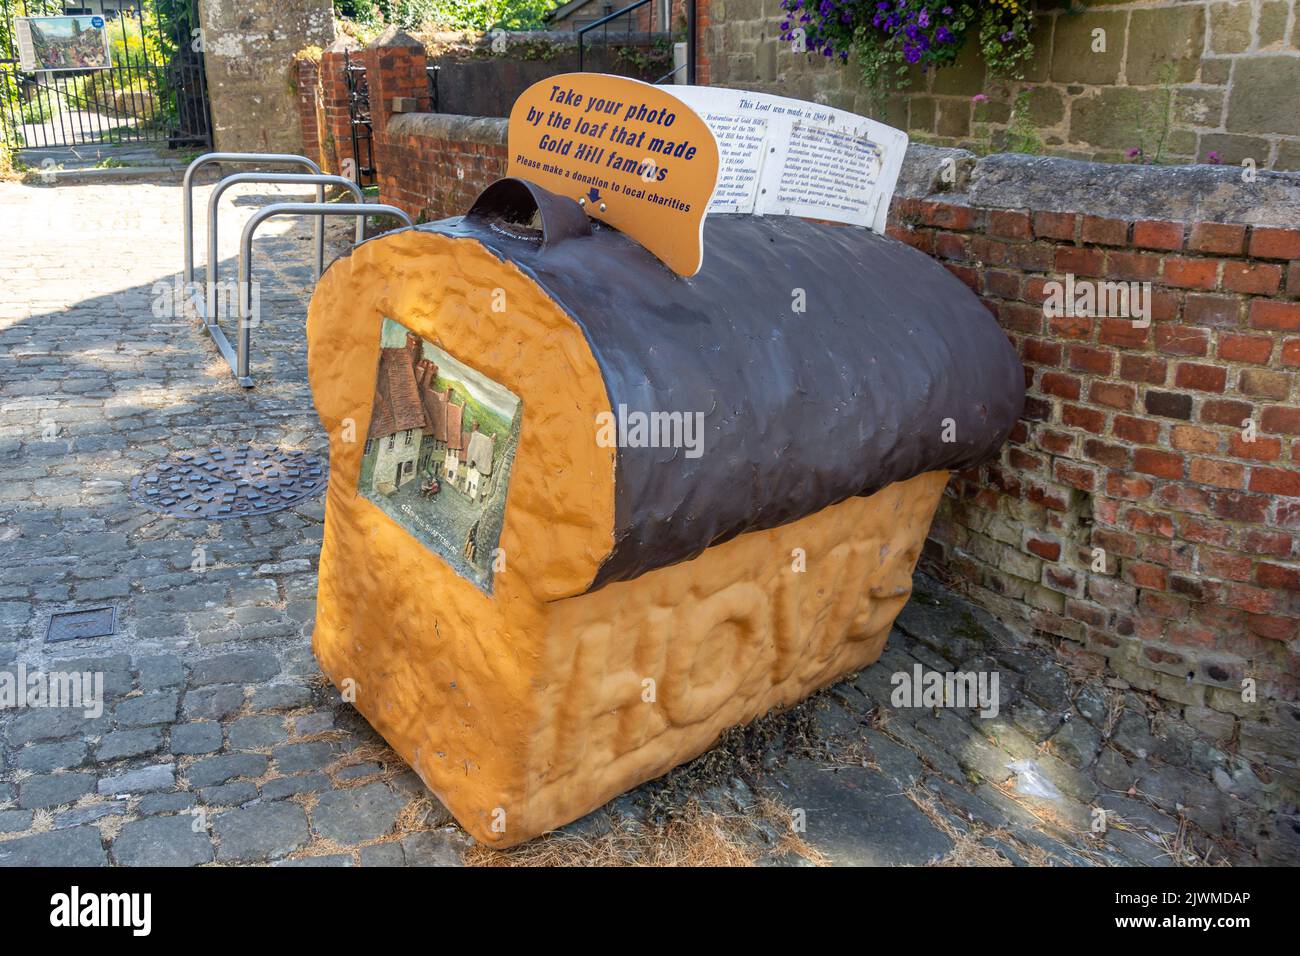 Il pane di Hovis (opportunità fotografica) in cima a Gold Hill, Shaftesbury, Dorset, Inghilterra, Regno Unito Foto Stock